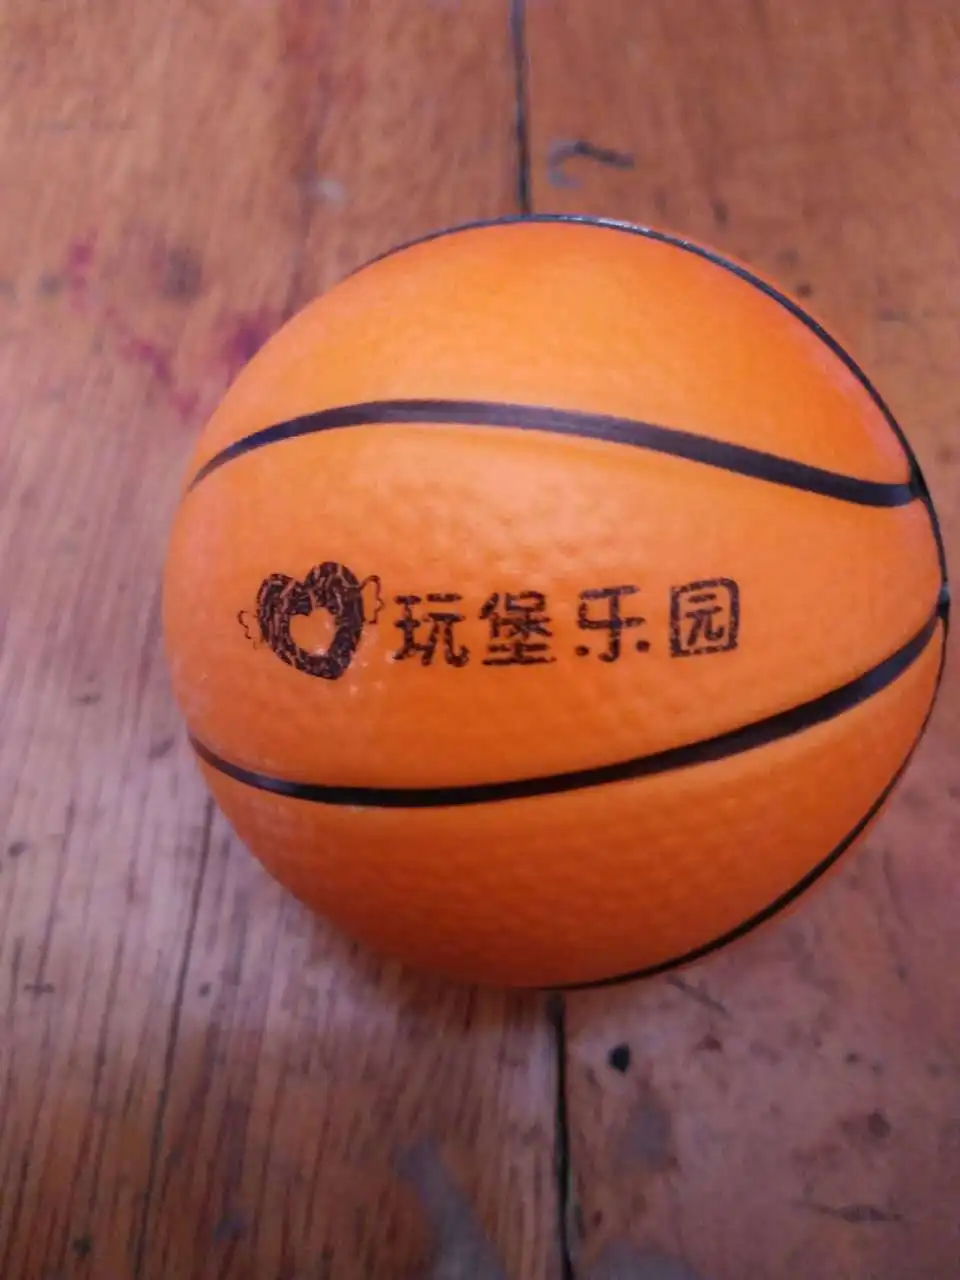 10 см губка ПУ баскетбол устойчивость детей футбол обучение пенящаяся игрушка фотографический реквизит настраиваемый